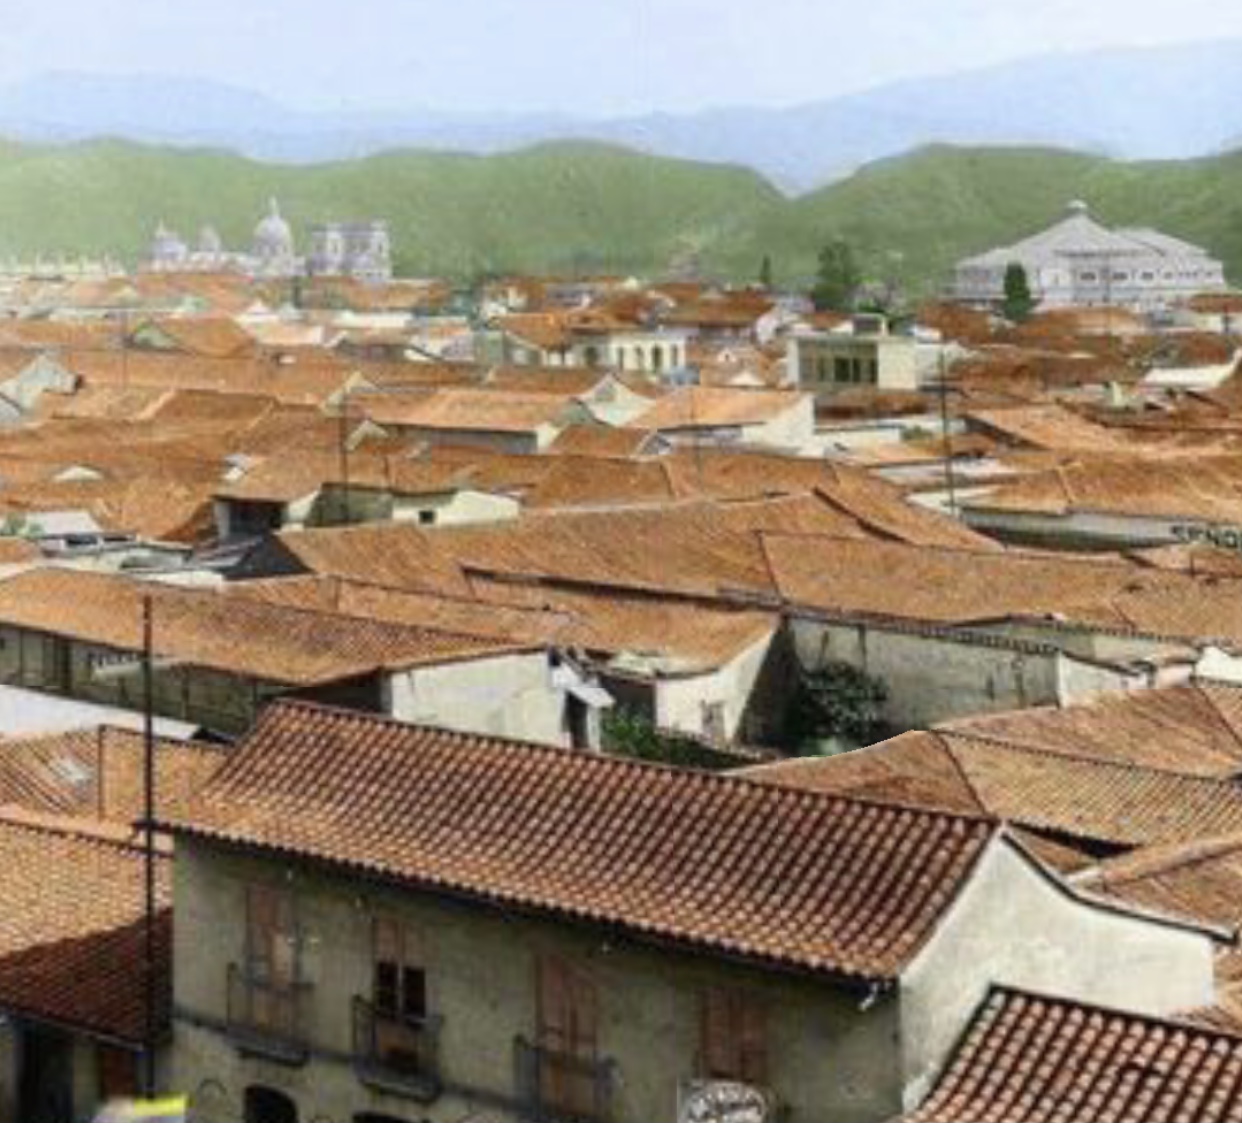 El diseño urbanístico de Caracas, así como el trazado en manzanas, era similar al de otras ciudades hispanoamericanas. Sus casas son todas muy parecidas, con un techo inclinado cubierto de tejas rojas.